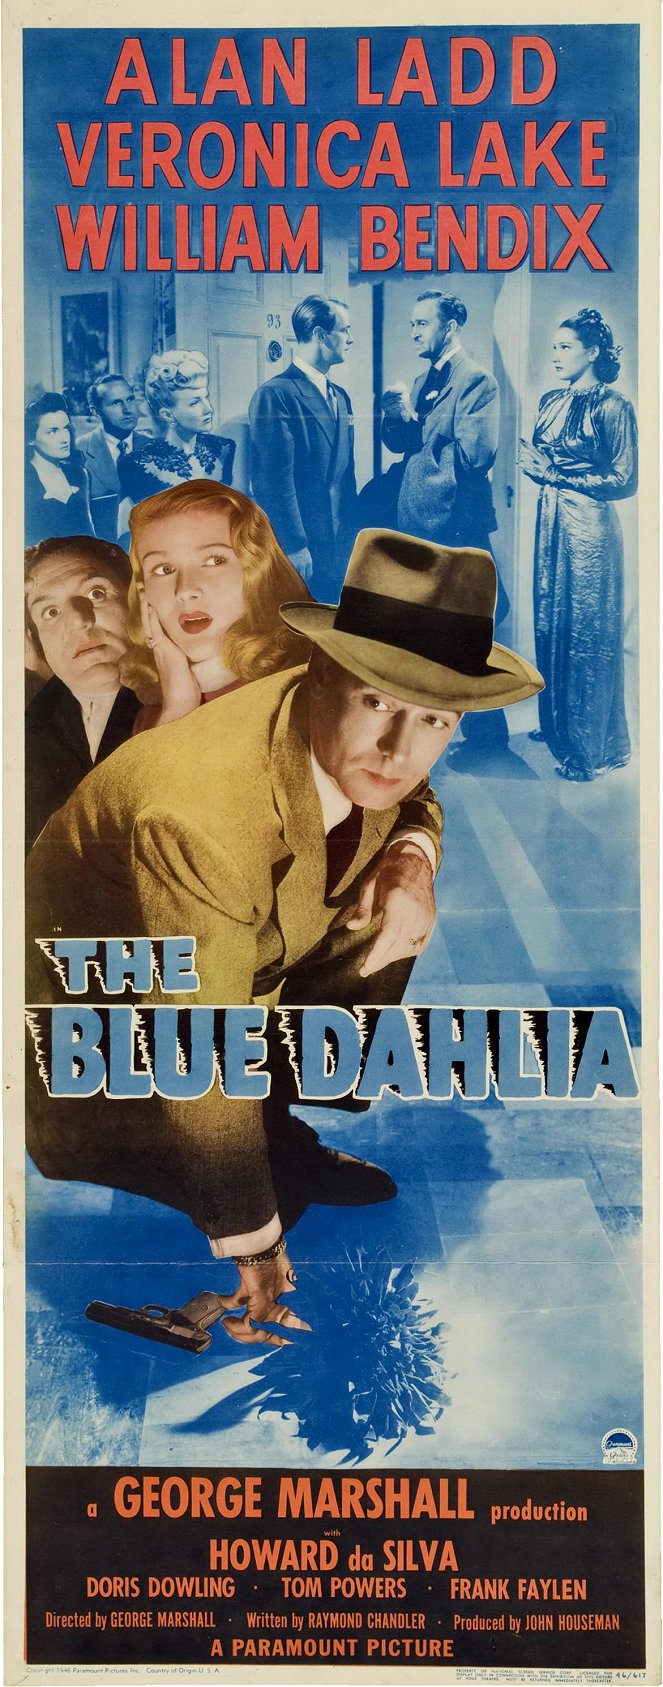 Die blaue Dahlie - Plakate